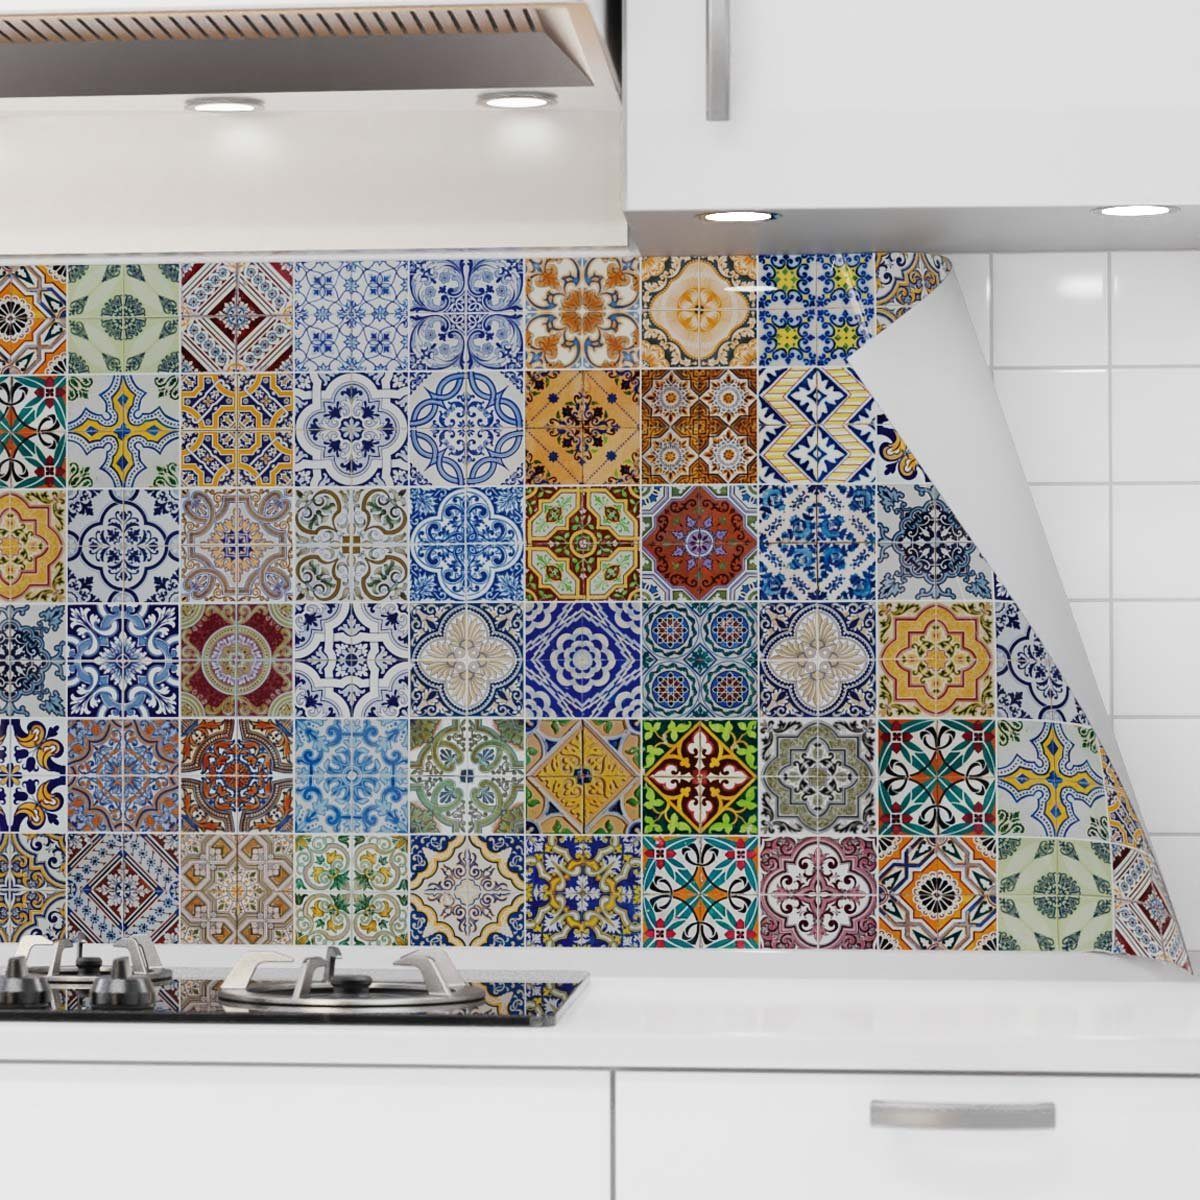 danario Küchenrückwand selbstklebend - Matt - Spritzschutz Küche - versteifte PET Folie Mosaikfliesen bunt